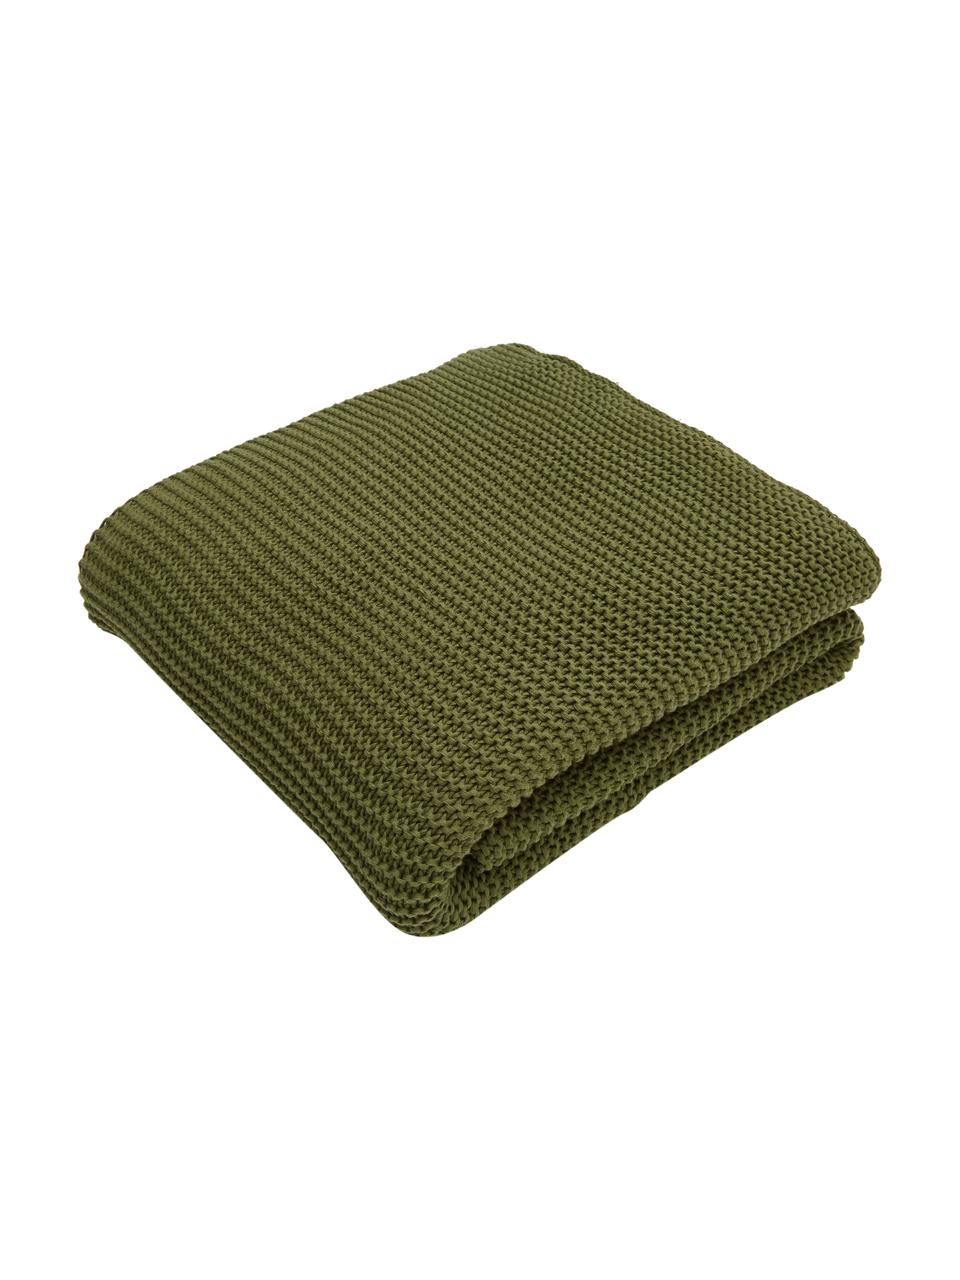 Coperta a maglia in cotone biologico verde Adalyn, 100% cotone biologico, certificato GOTS, Verde, Larg. 150 x Lung. 200 cm